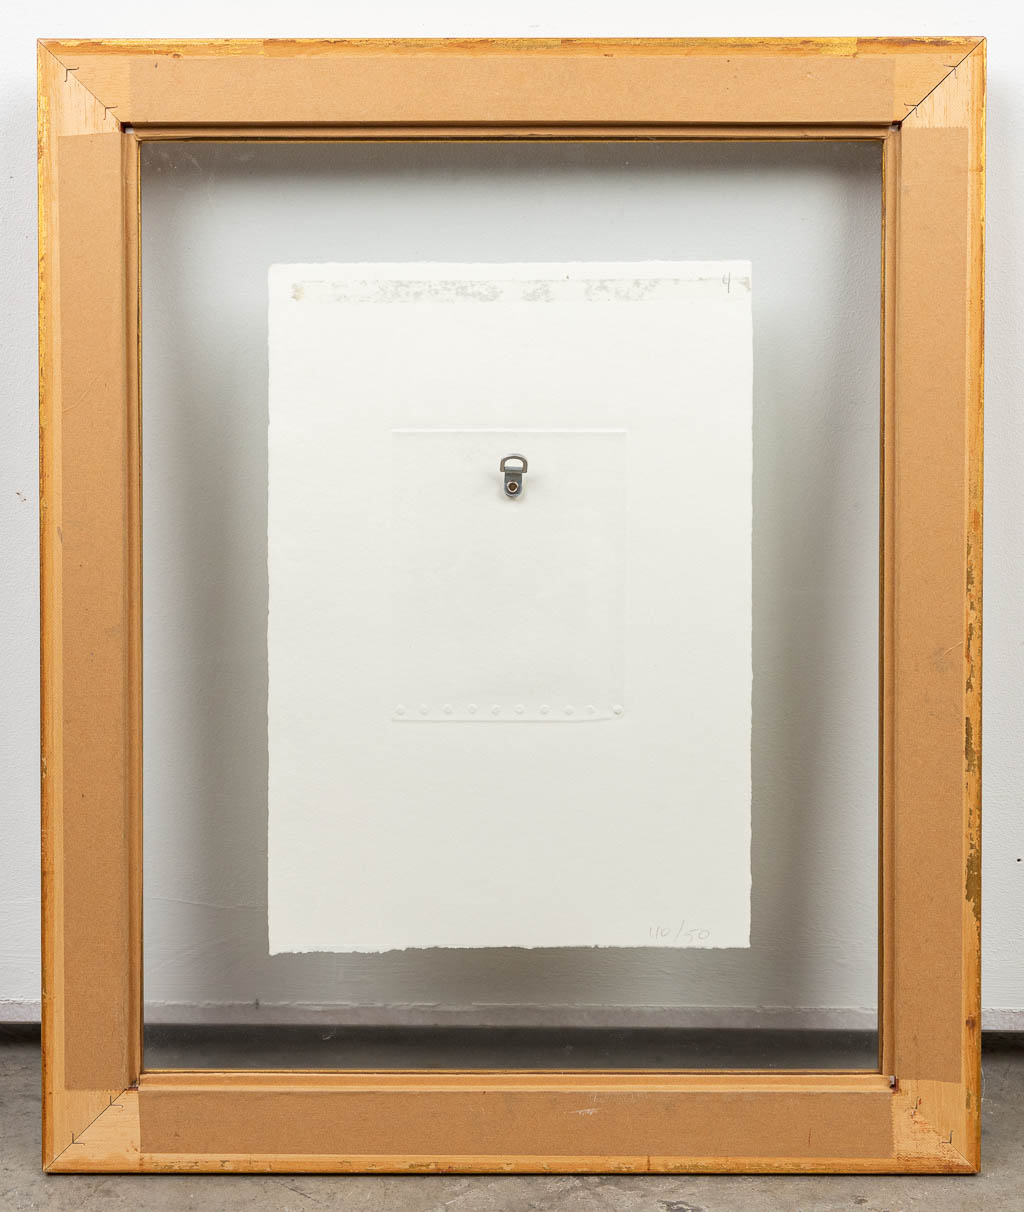 Rik SLABBINCK (1914-1991) 'Dump Index' a lithograph, numbered 20/25, 1989. (12,5 x 15 cm)